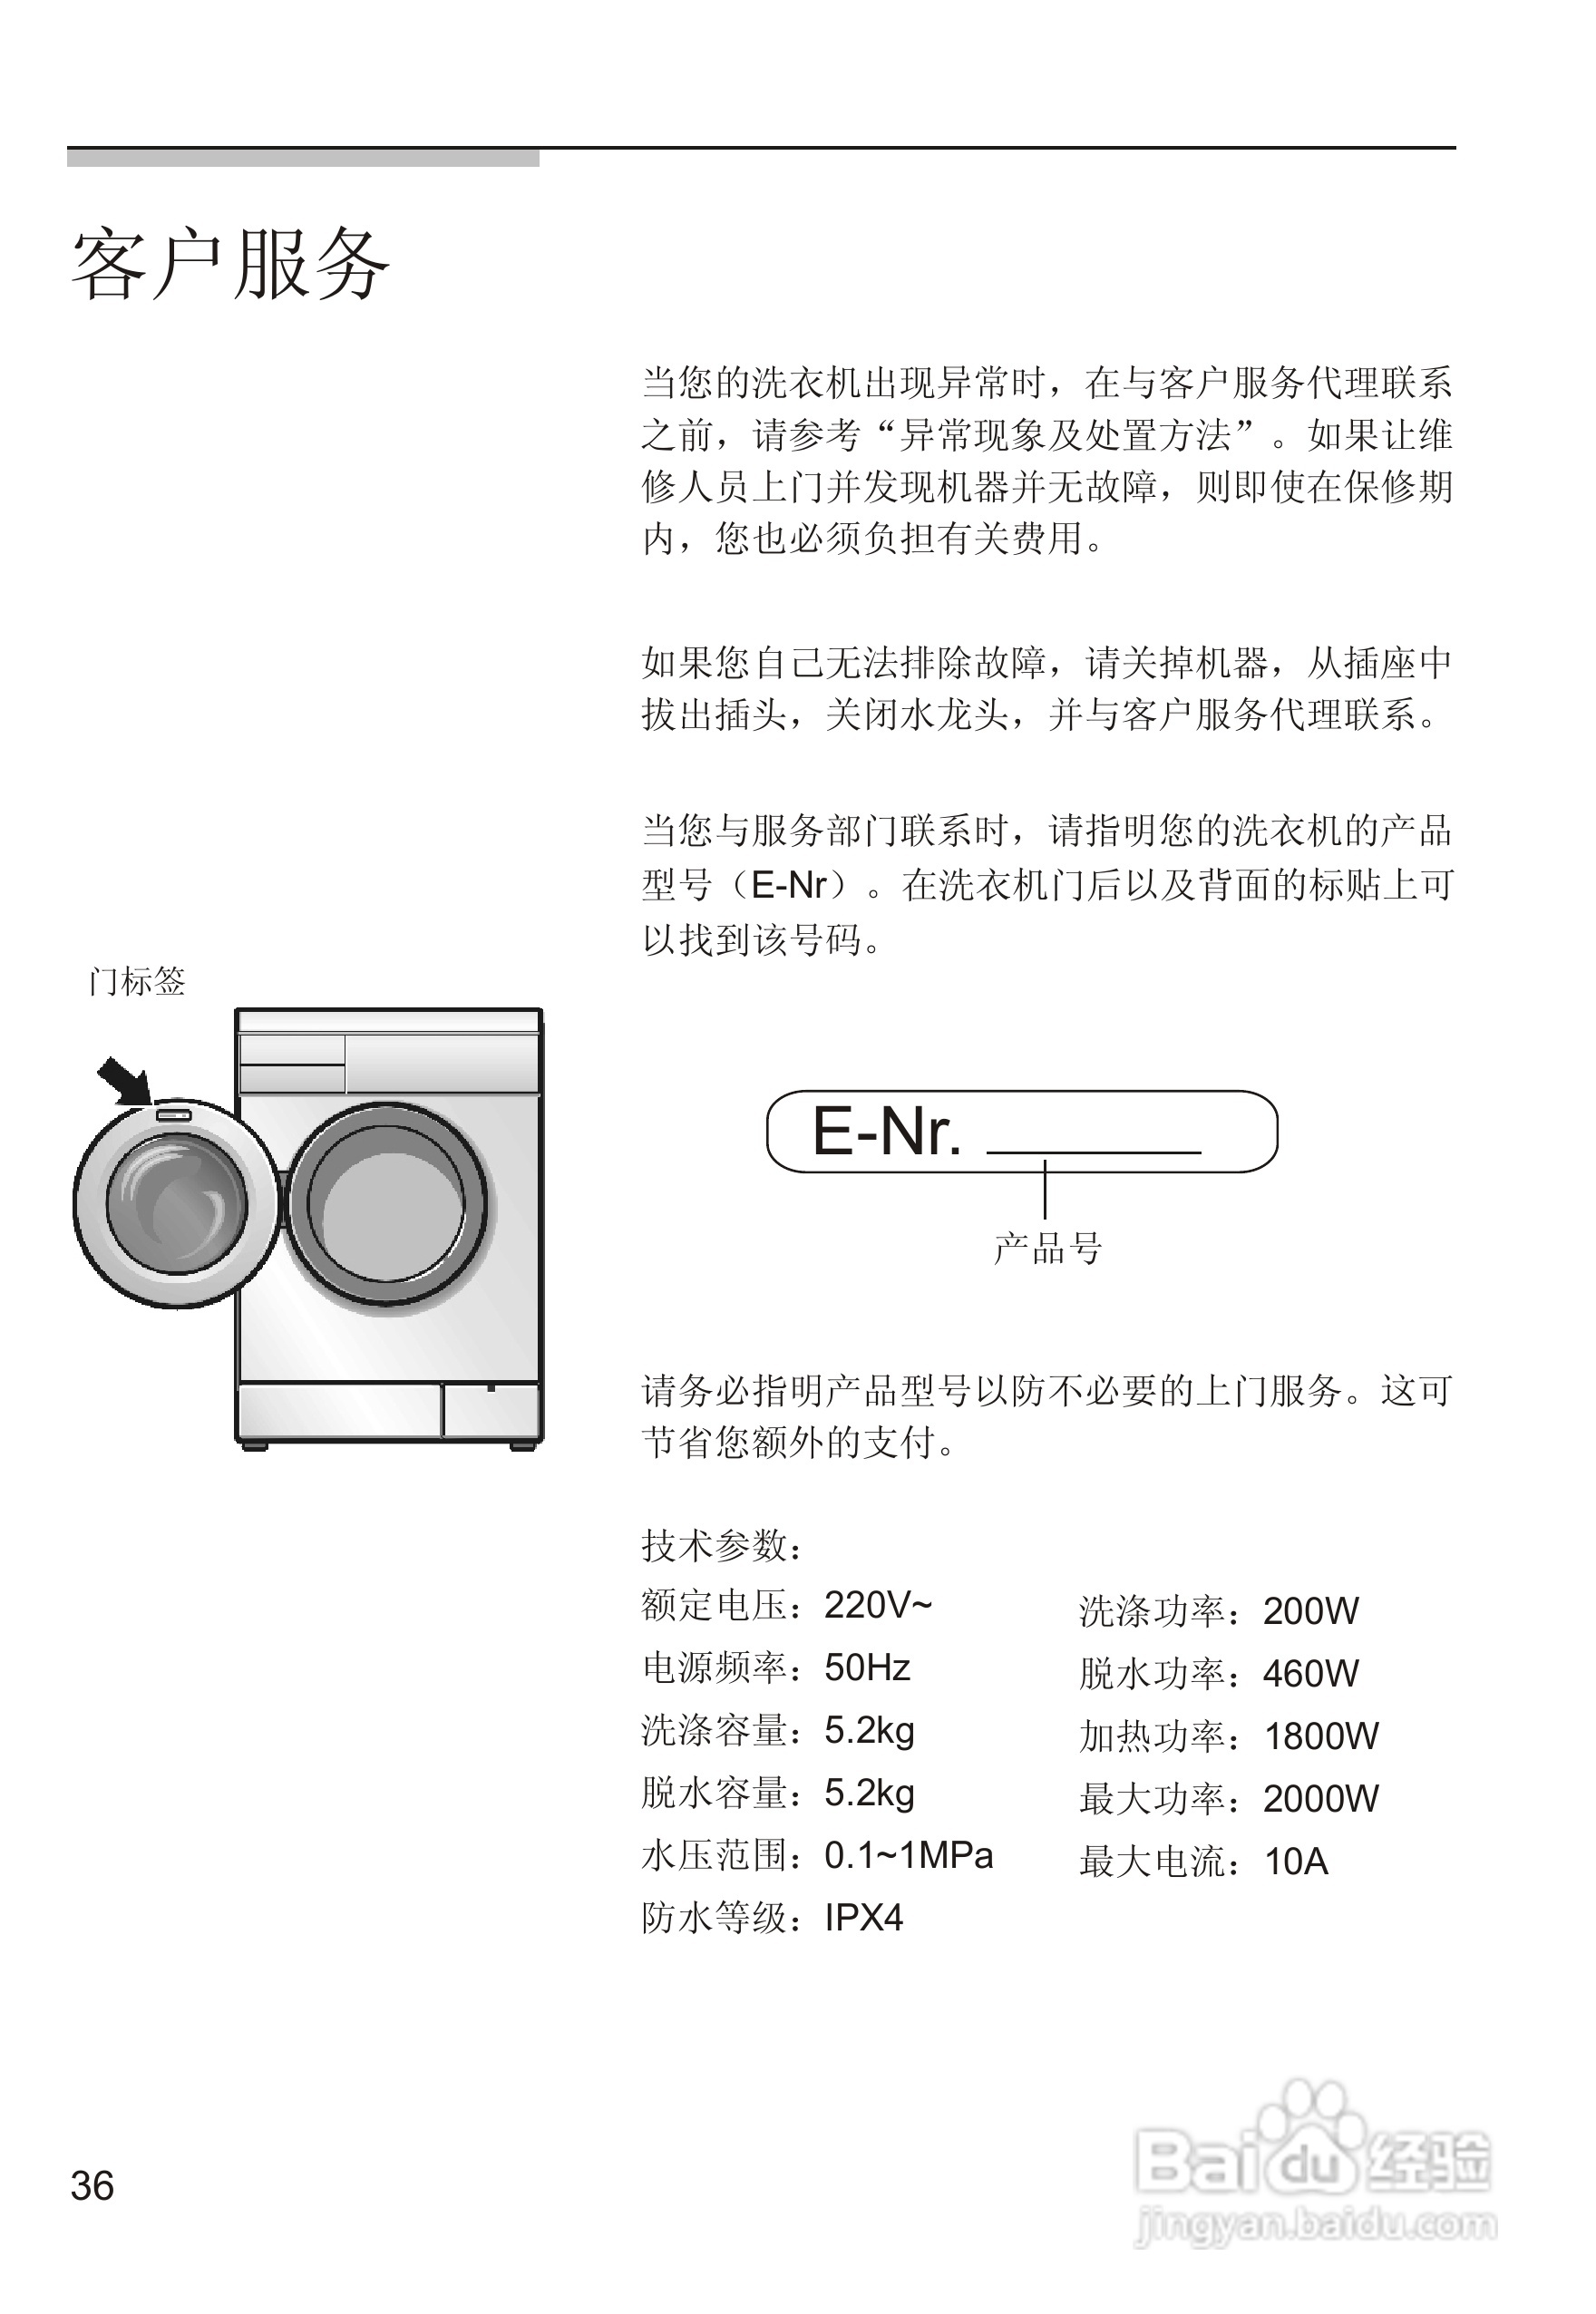 西门子silver2005 洗衣机说明书:[4]